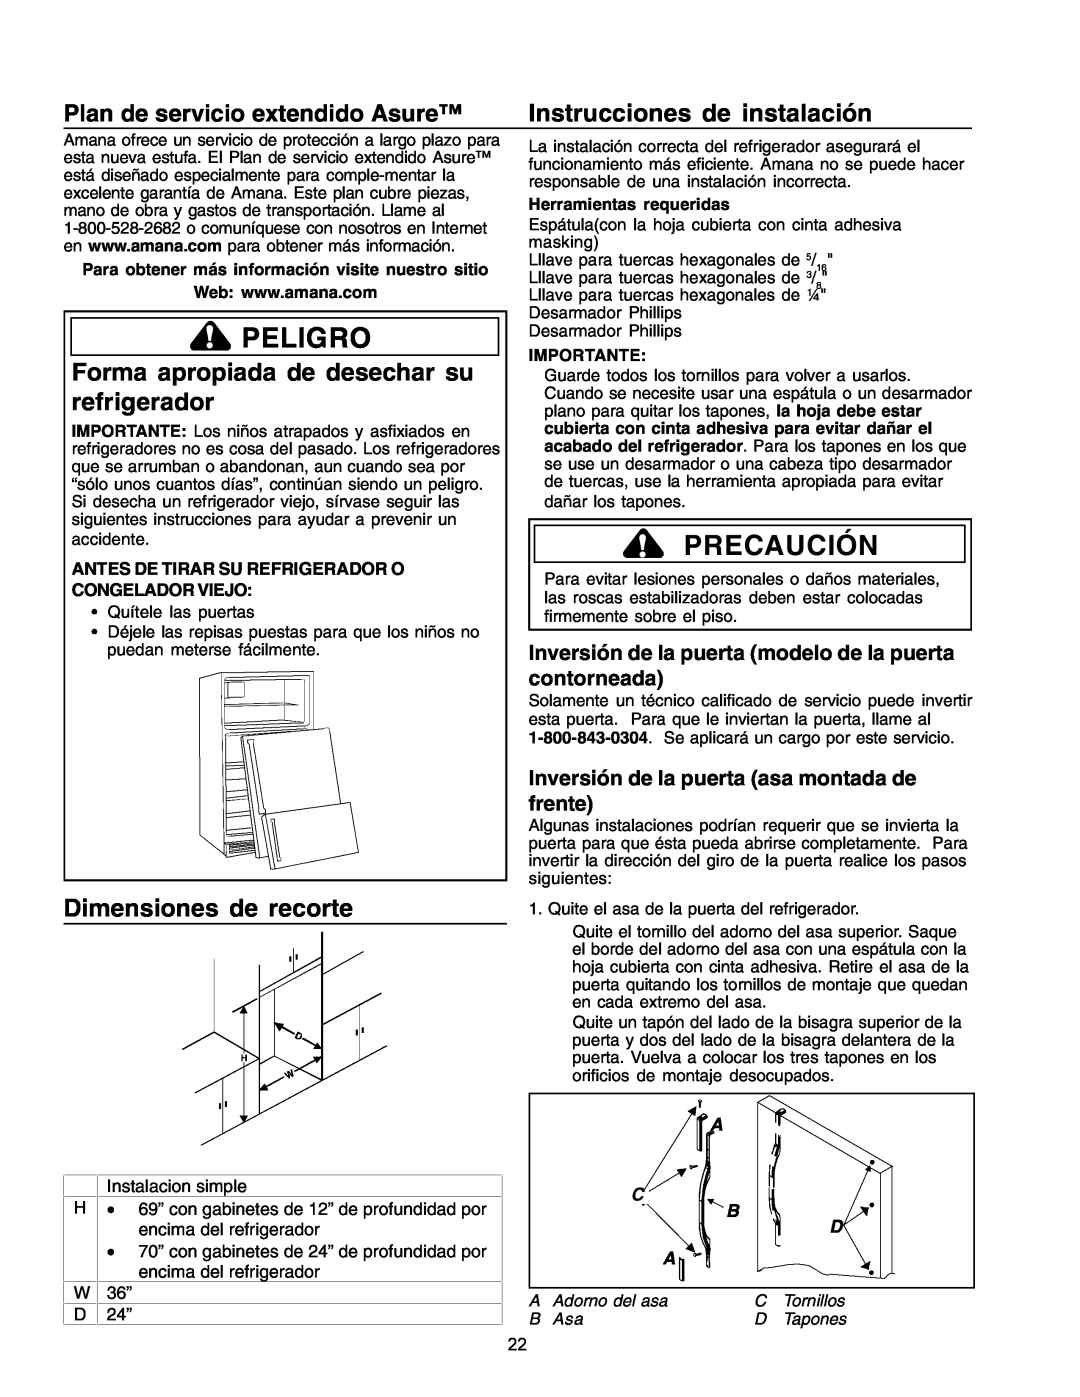 Amana IA 52204-0001 Peligro, Precaución, Instrucciones de instalación, Forma apropiada de desechar su refrigerador 